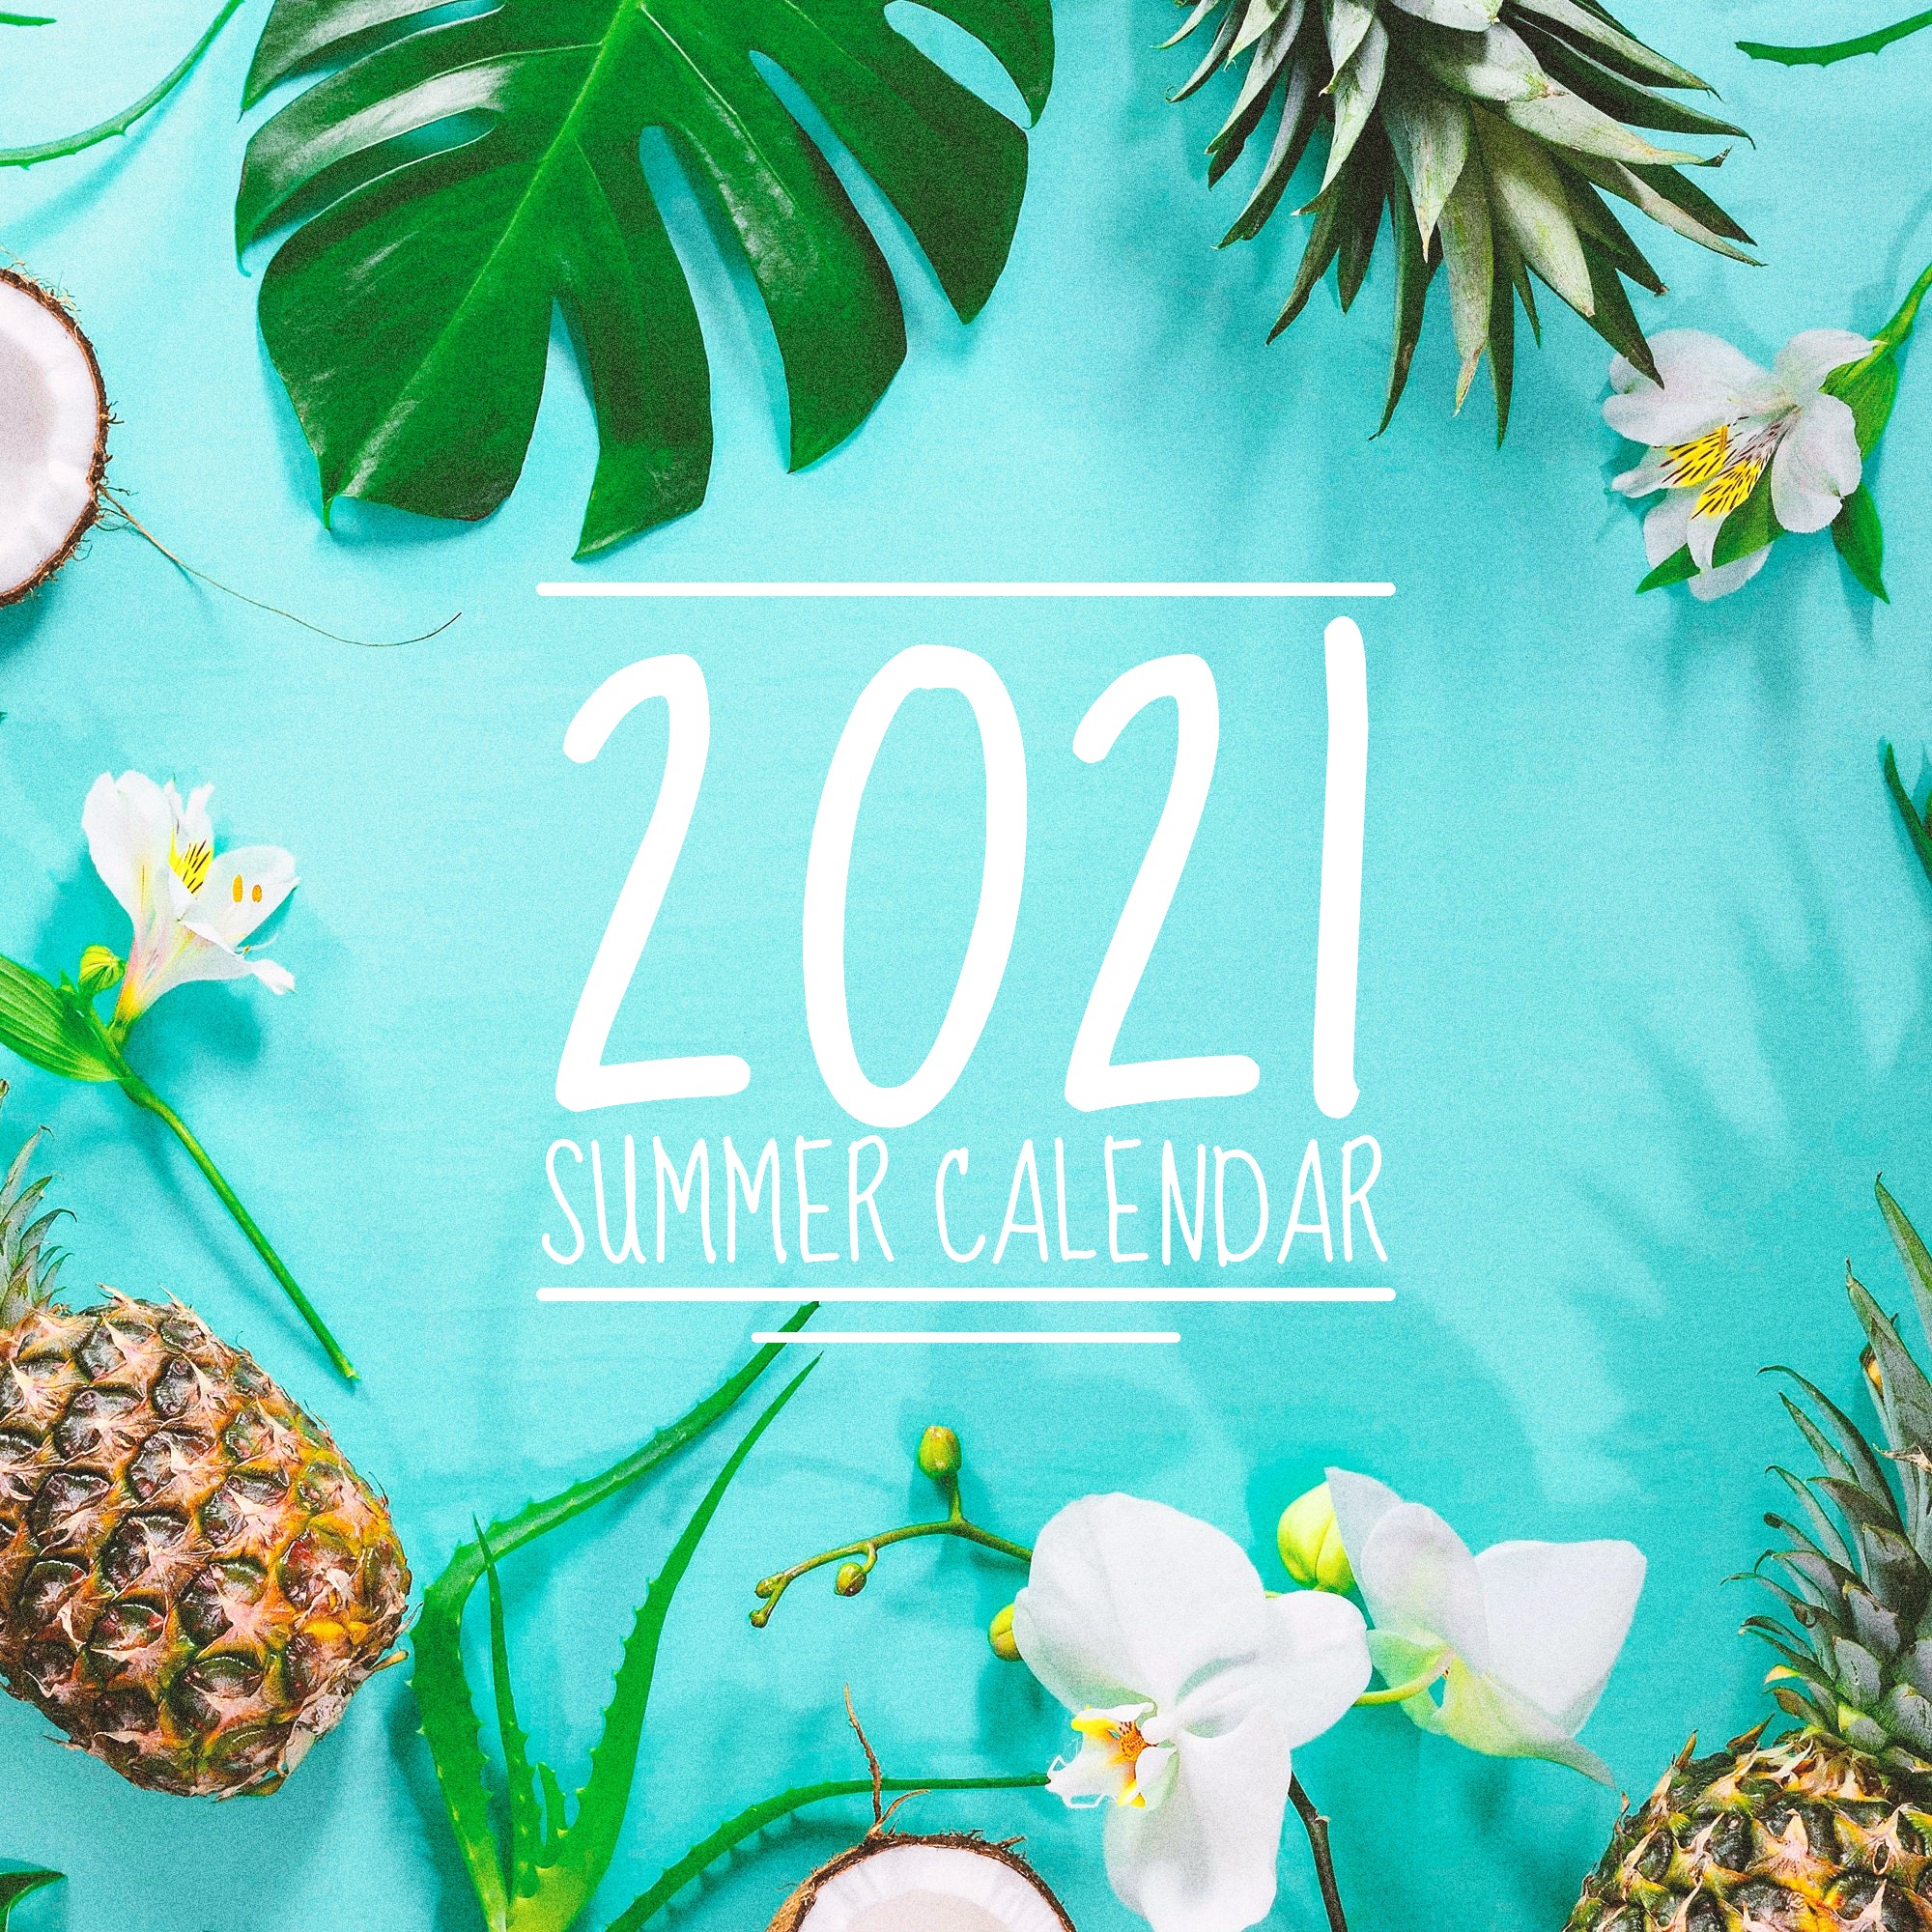 2021 Summer Calendar